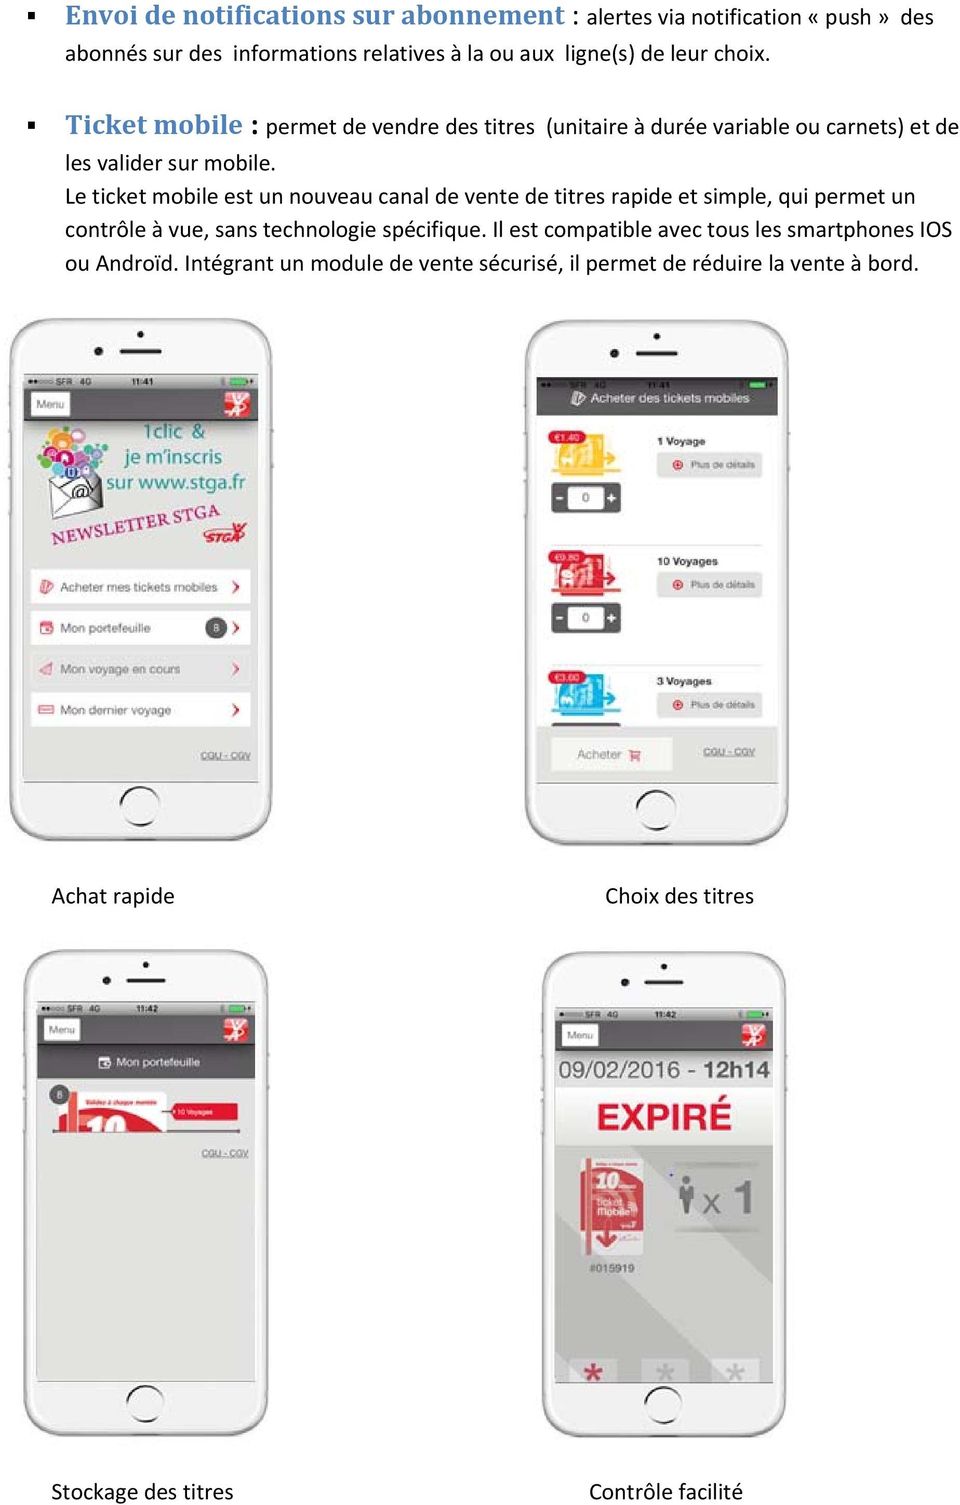 Le ticket mobile est un nouveau canal de vente de titres rapide et simple, qui permet un contrôle à vue, sans technologie spécifique.